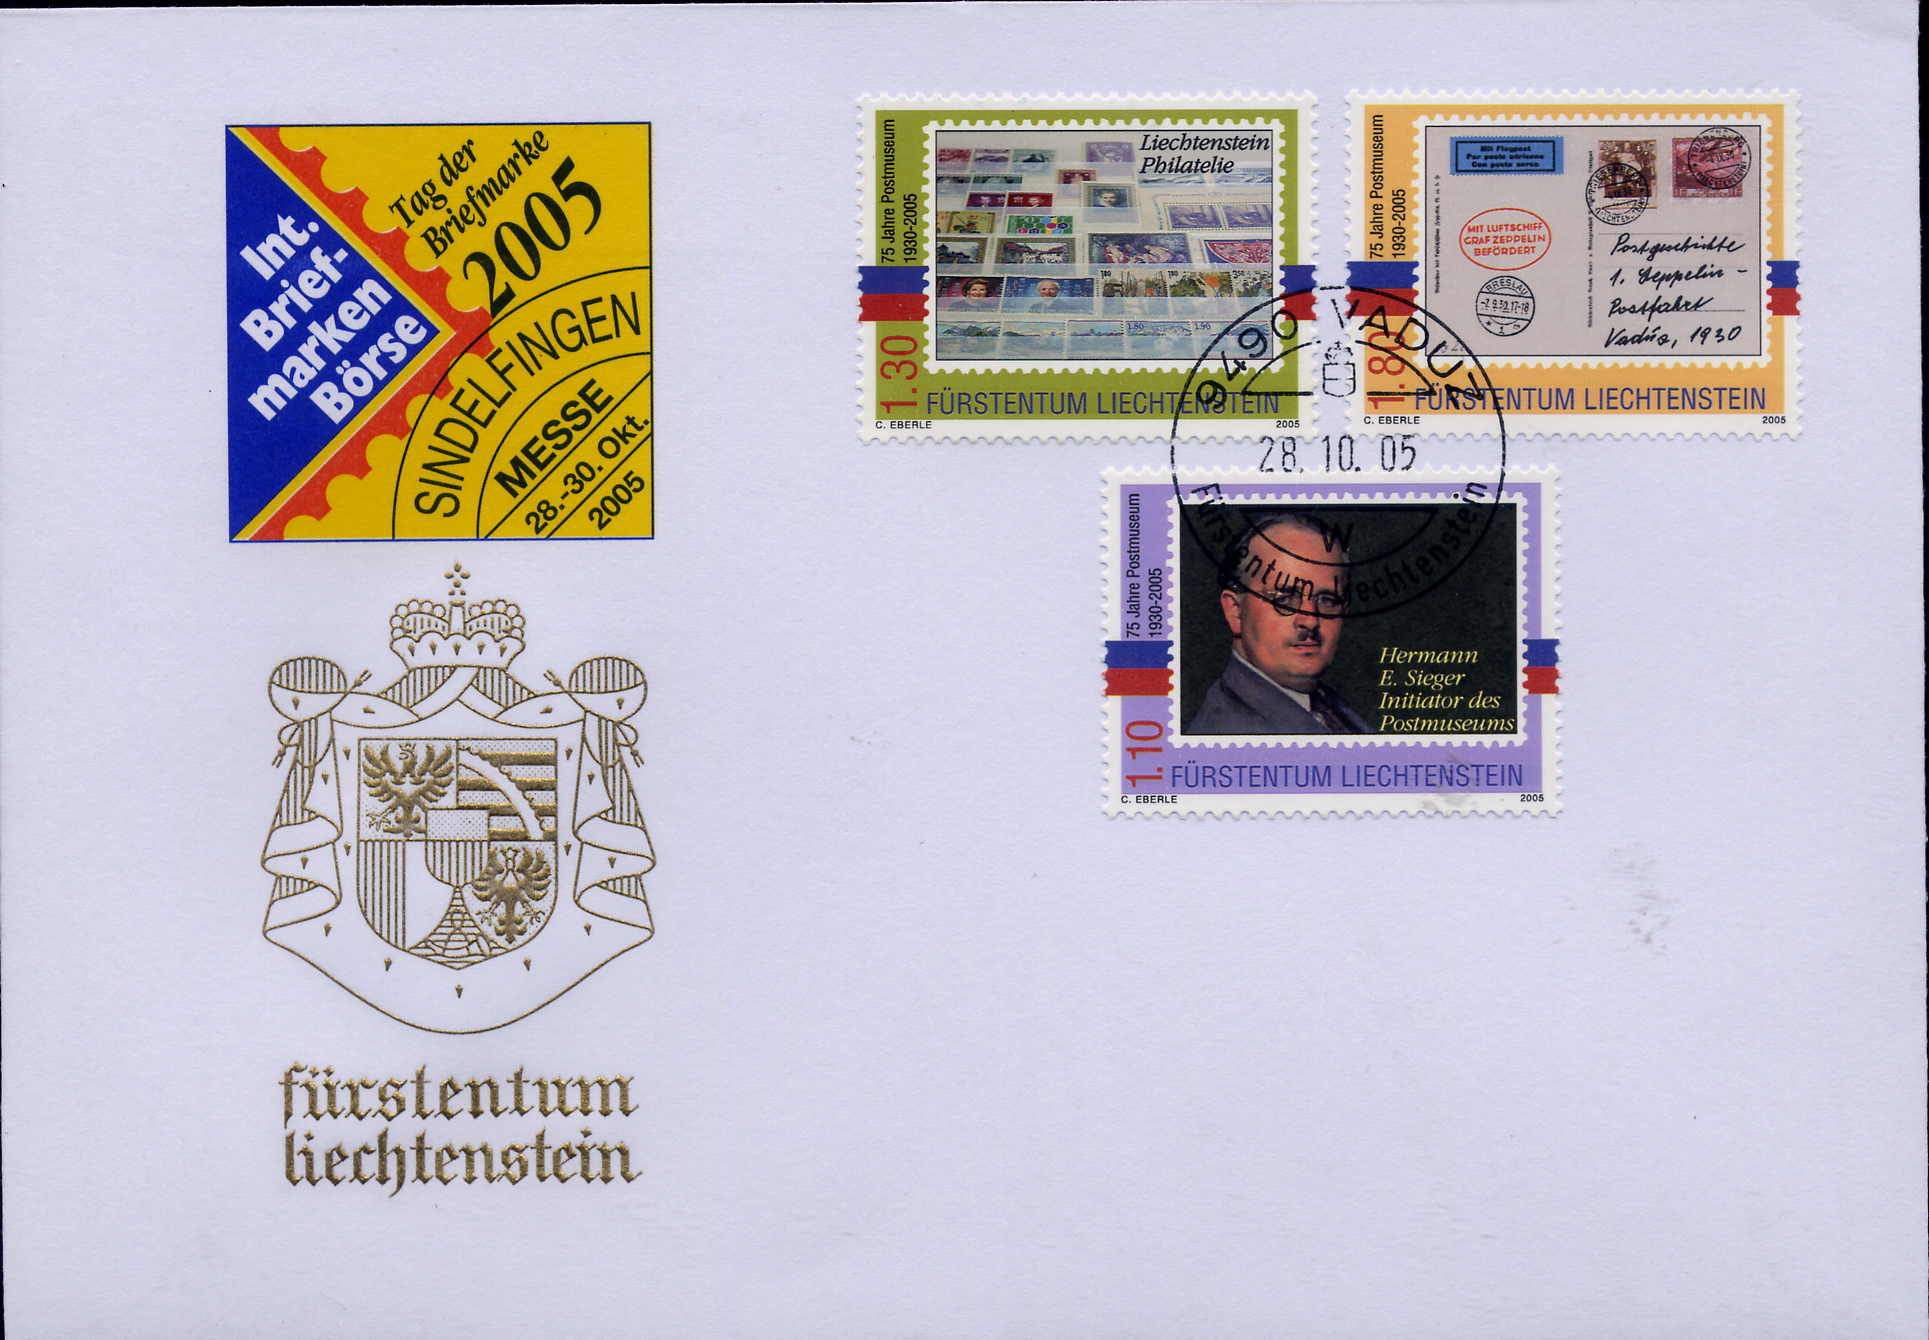 https://swiss-stamps.org/wp-content/uploads/2023/12/2005-10-Sindelfingen-2.jpg